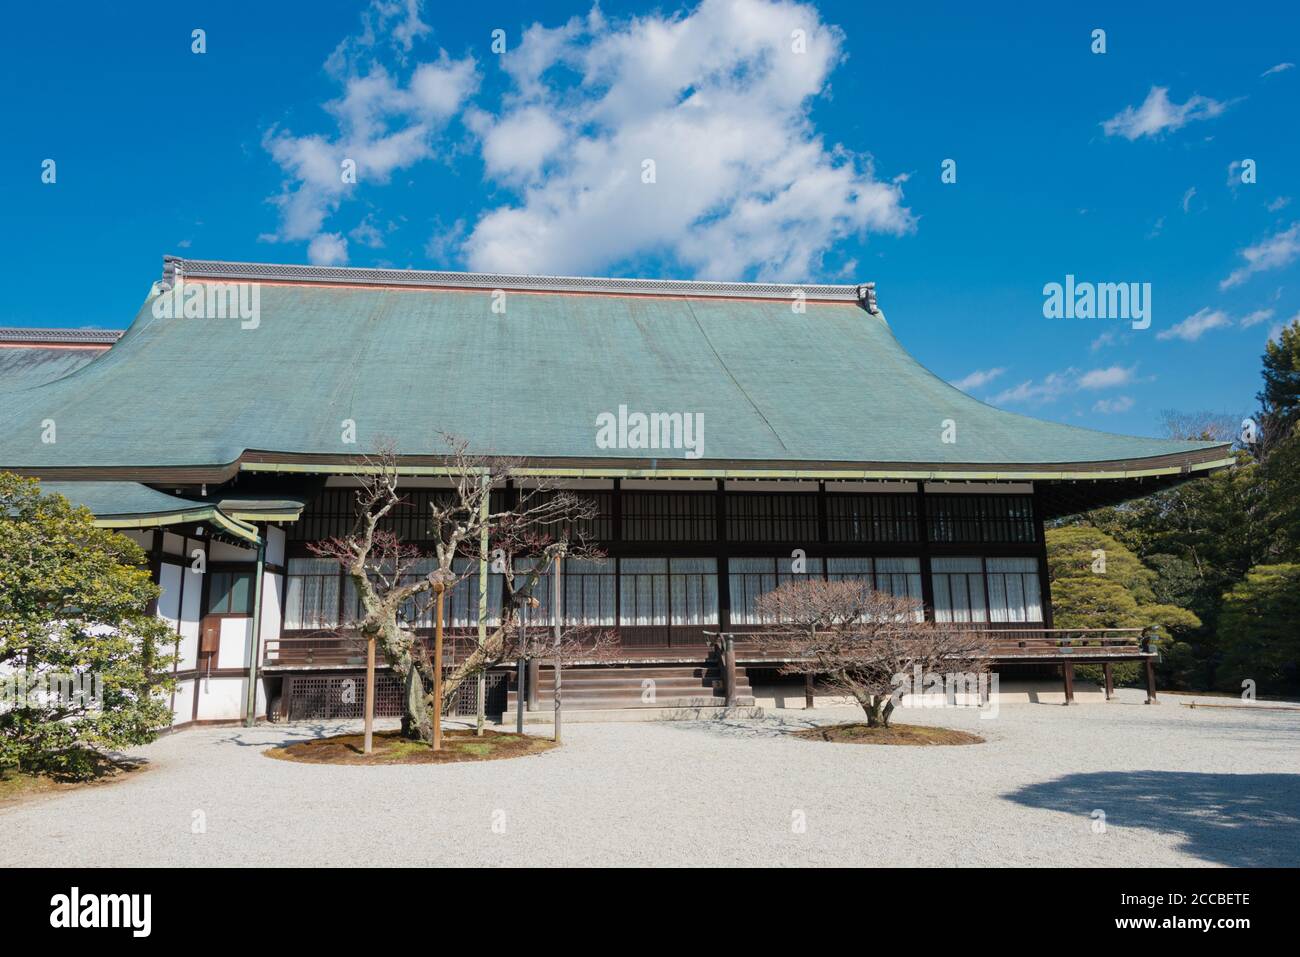 Kyoto, Japan - Sento Imperial Palace (Sento Gosho) in Kyoto, Japan. Es ist ein großer Garten, früher das Gelände eines Palastes für pensionierte Kaiser. Stockfoto